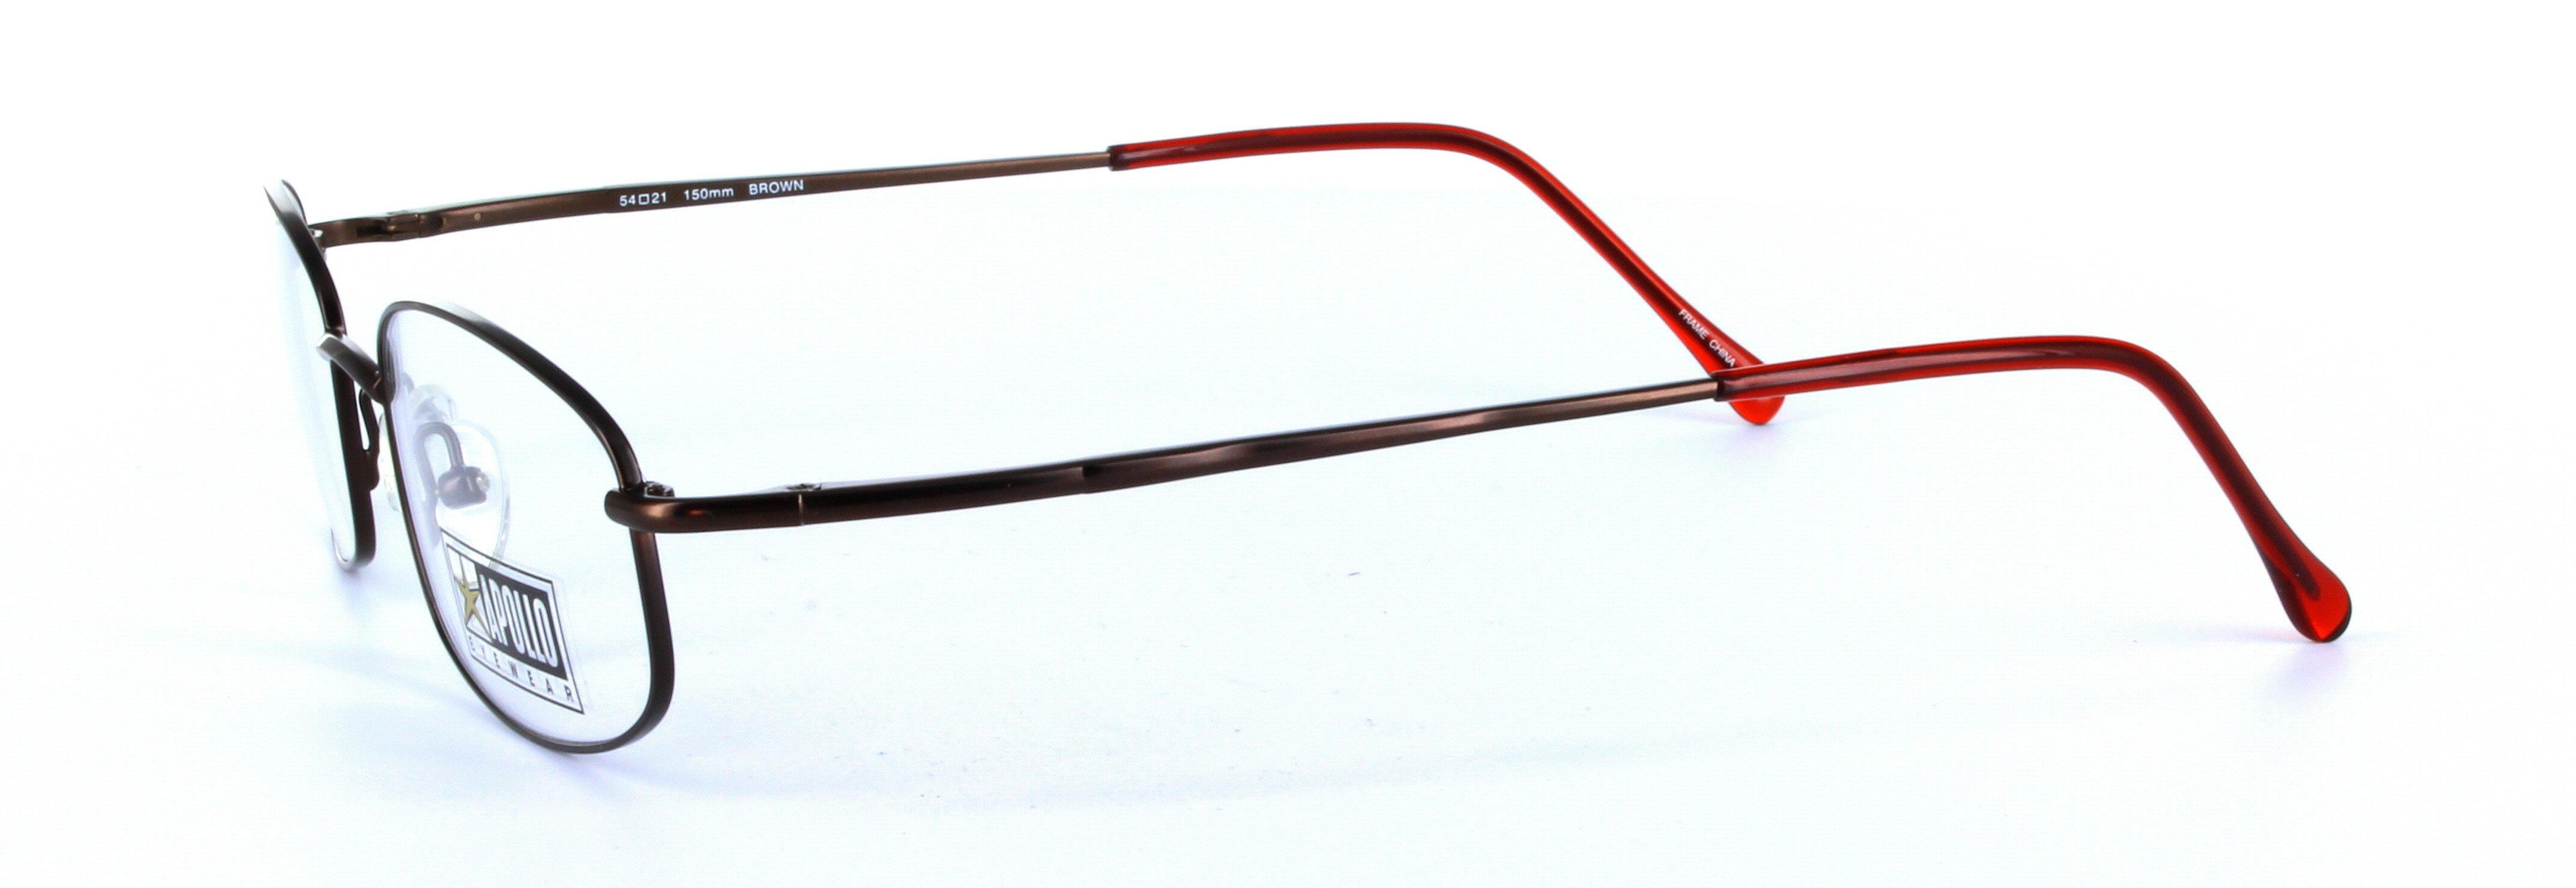 Barbera Brown Full Rim Oval Plastic Glasses  - Image View 2